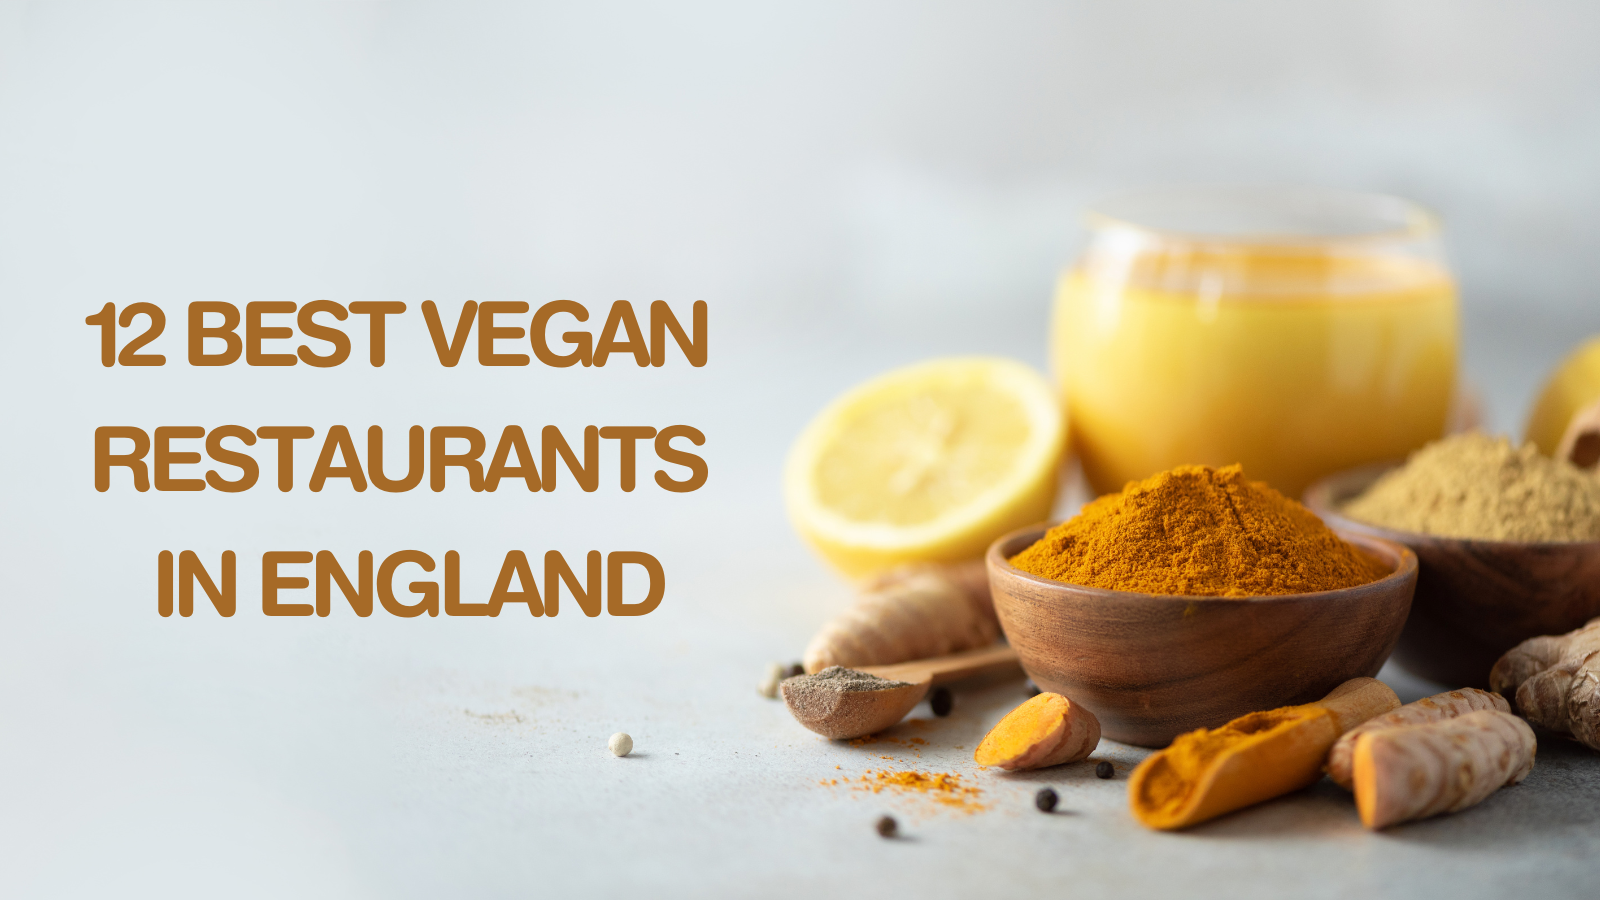 12 Best Vegan Restaurants In England